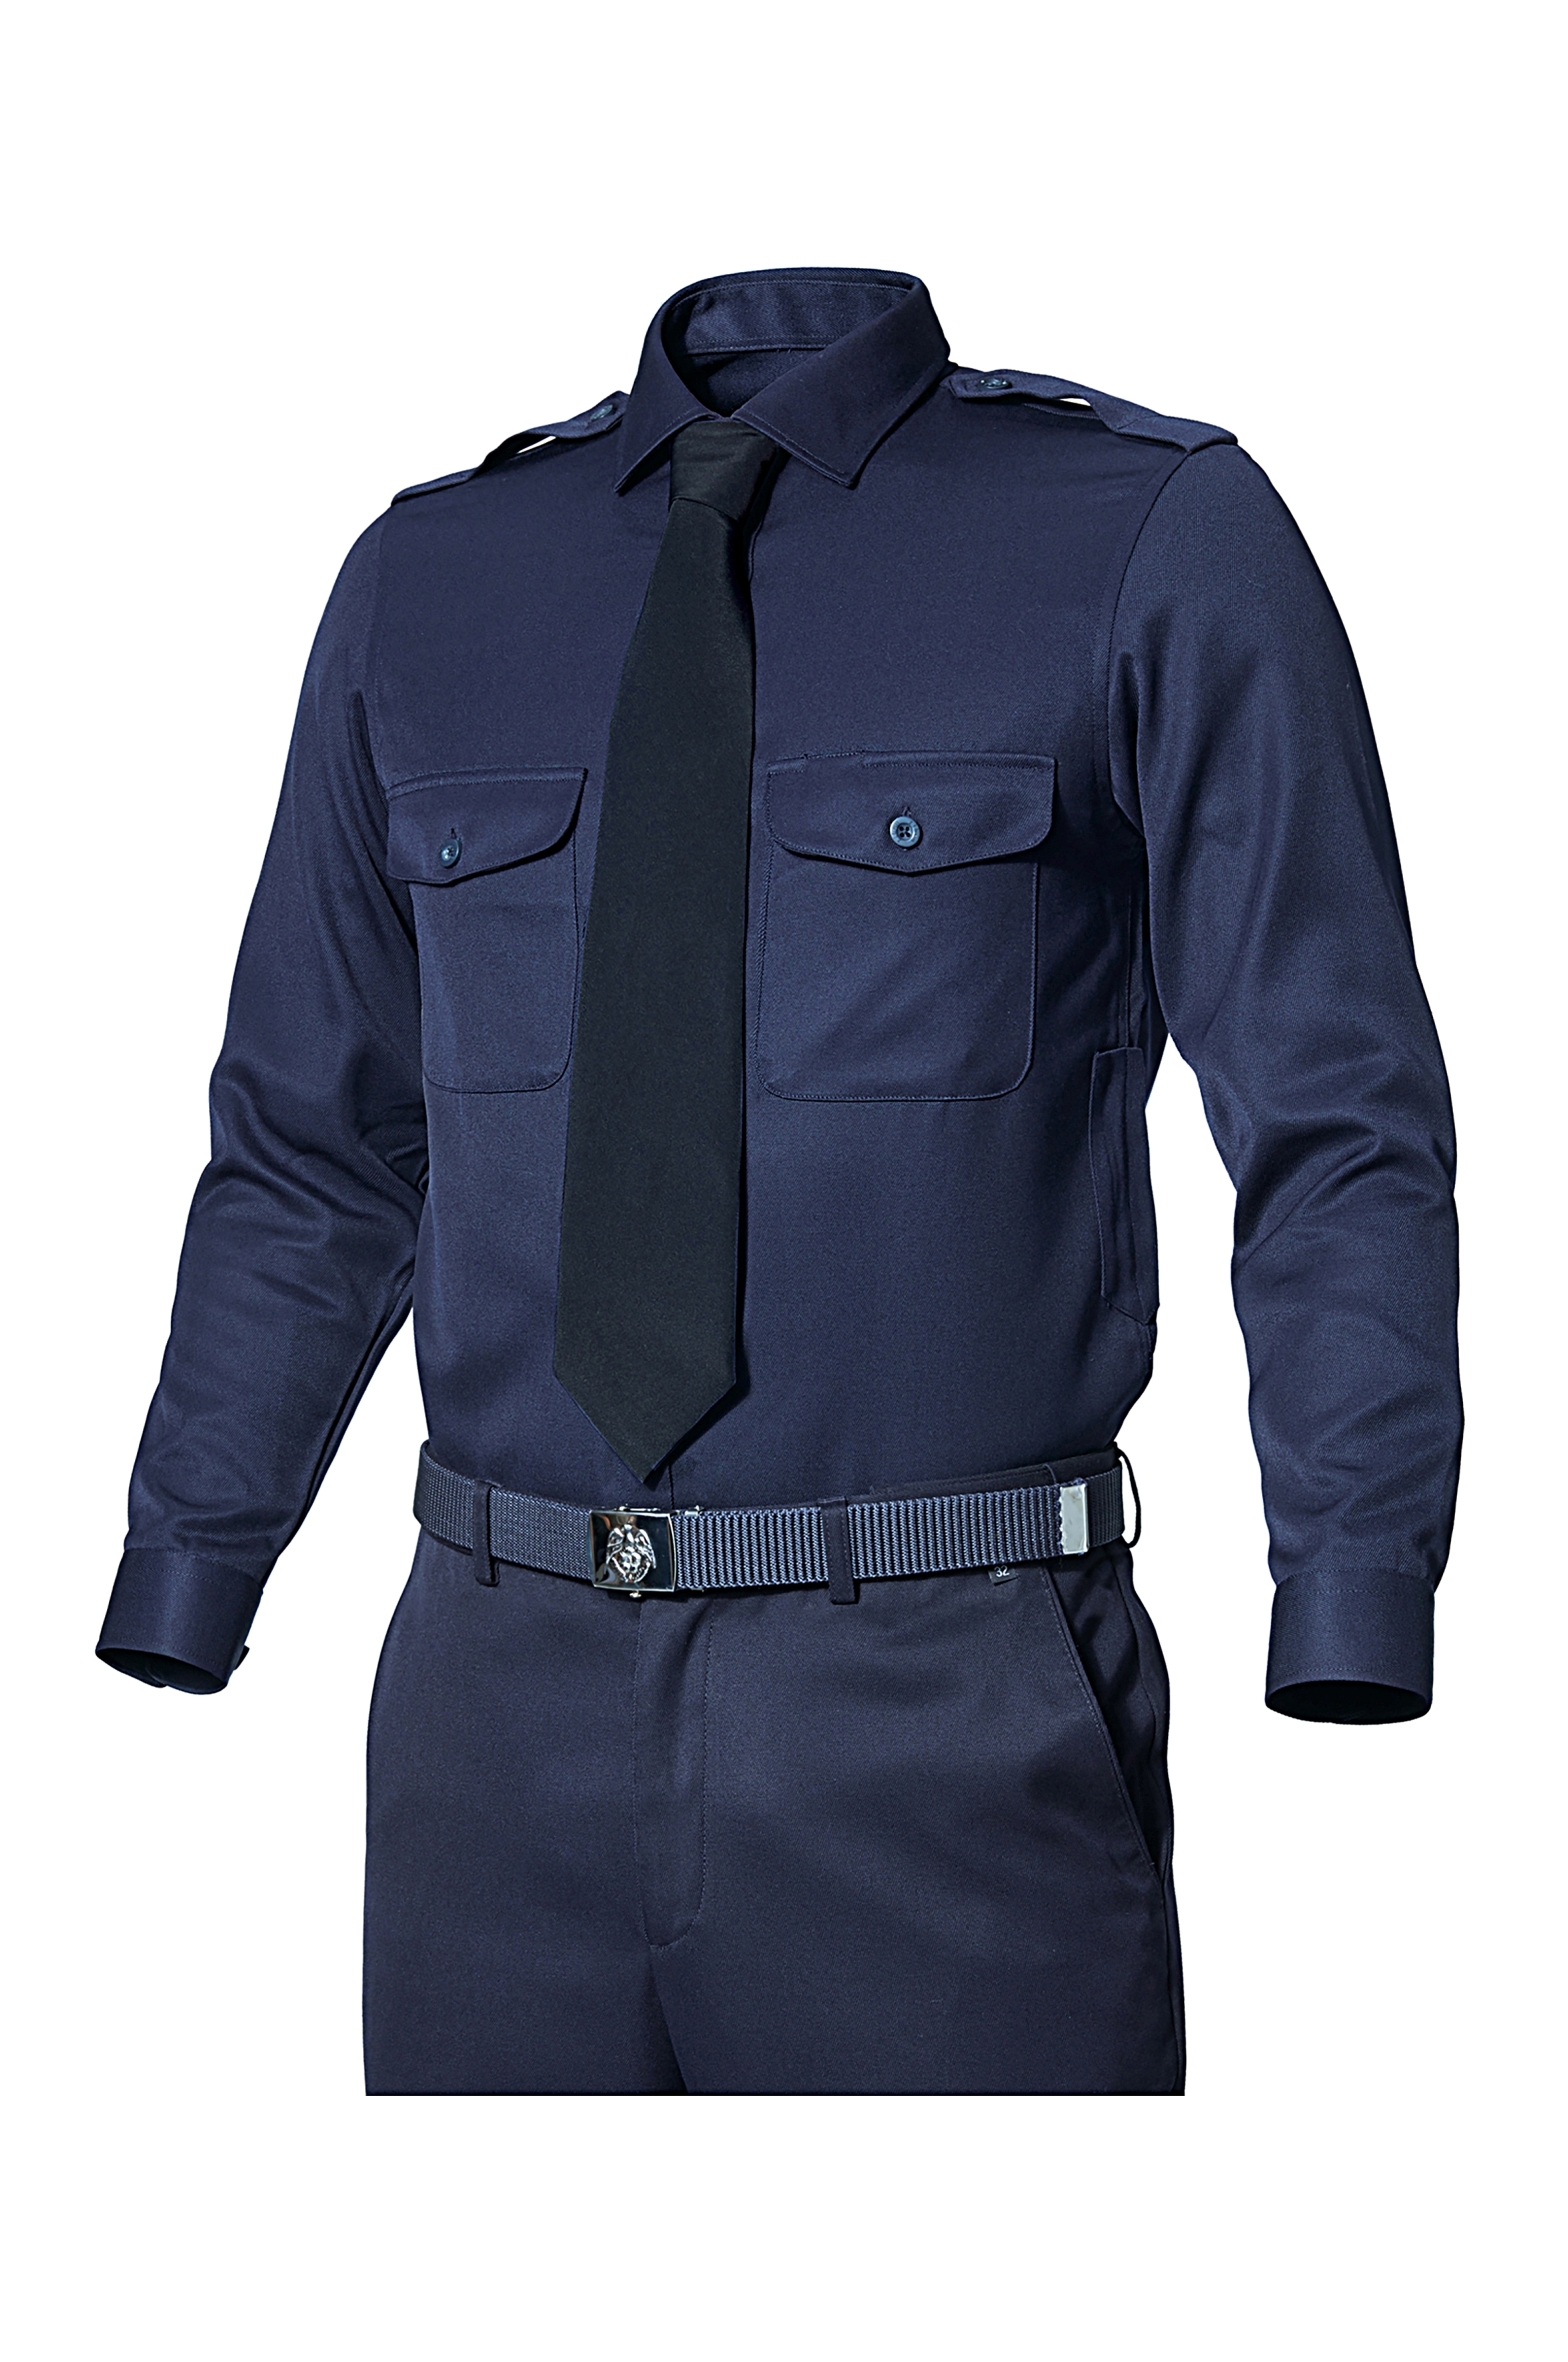 ZB-Y1043 (네이비)지벤 추동 경비복 셔츠